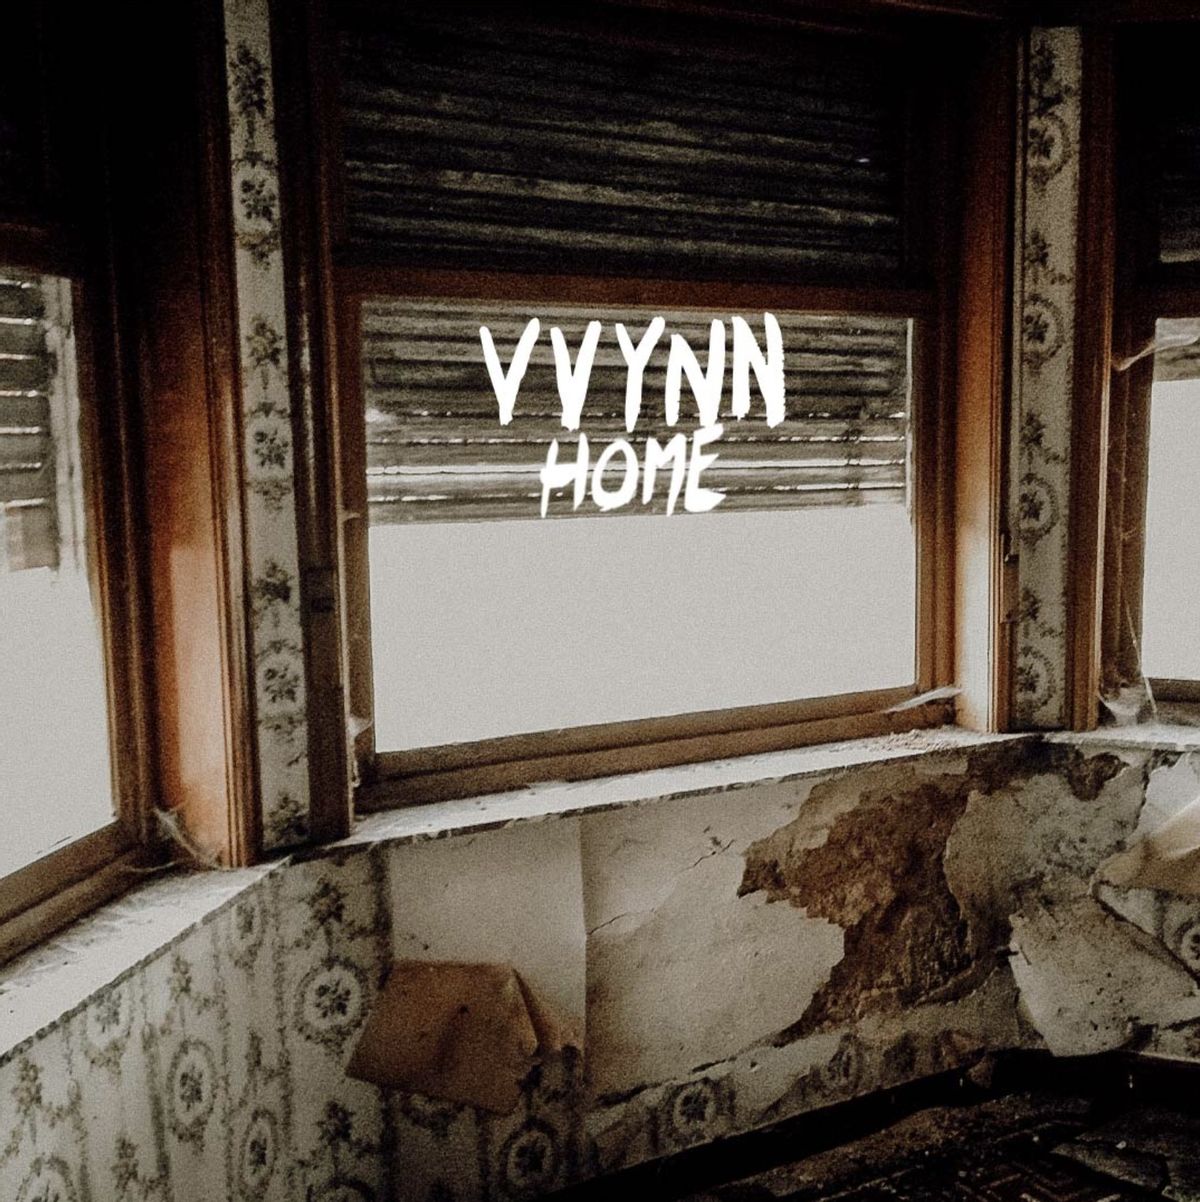 VVYNN - Home